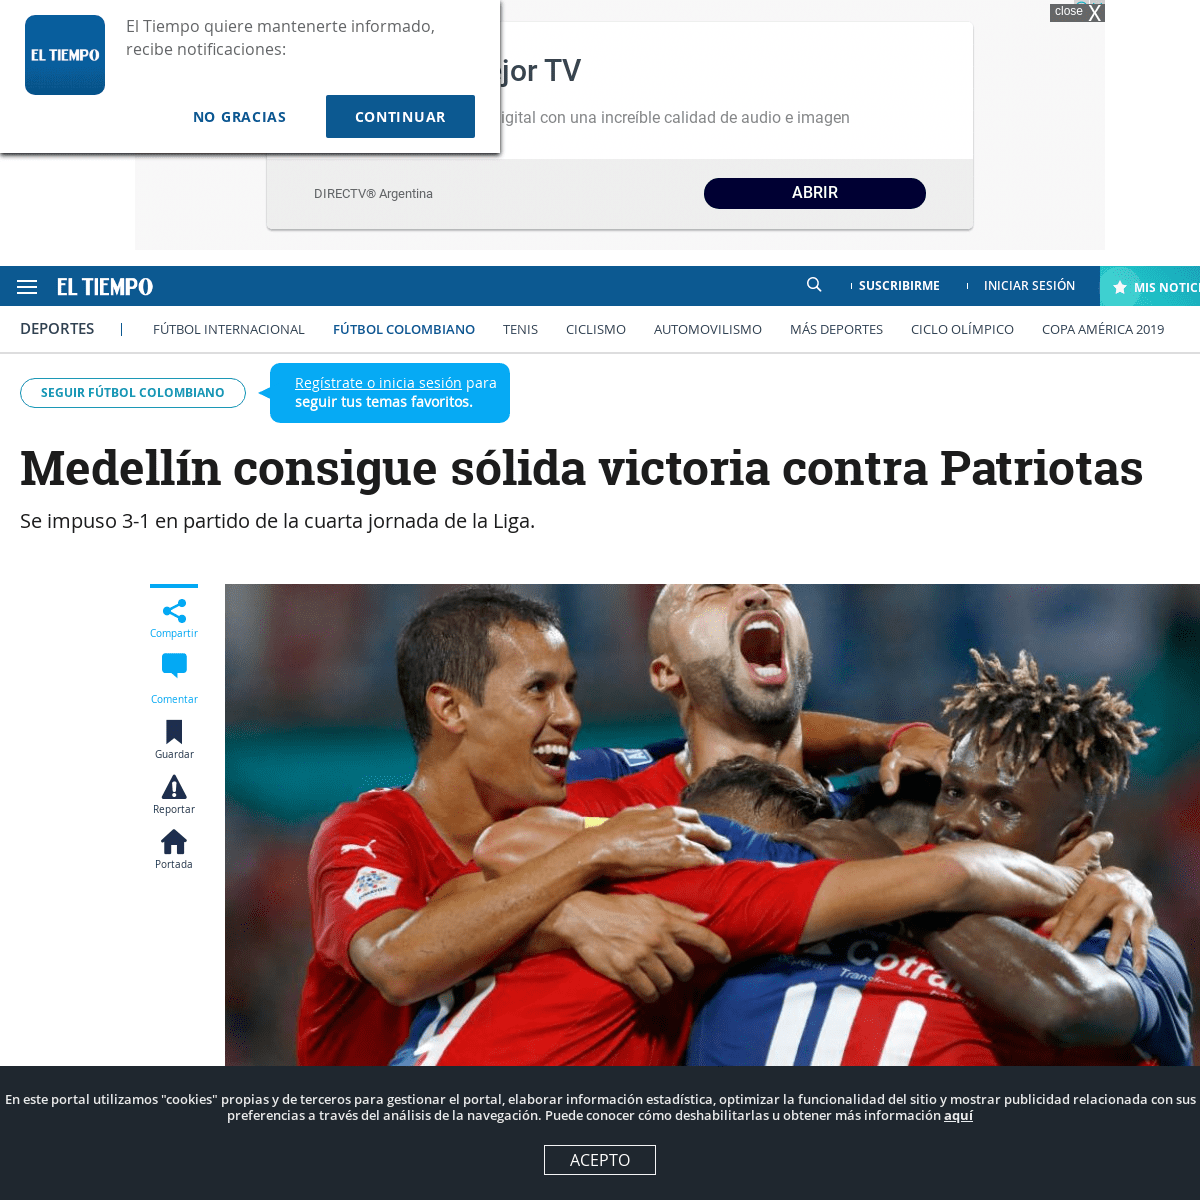 A complete backup of www.eltiempo.com/deportes/futbol-colombiano/medellin-vence-a-patriotas-3-1-en-la-fecha-4-de-la-liga-460074